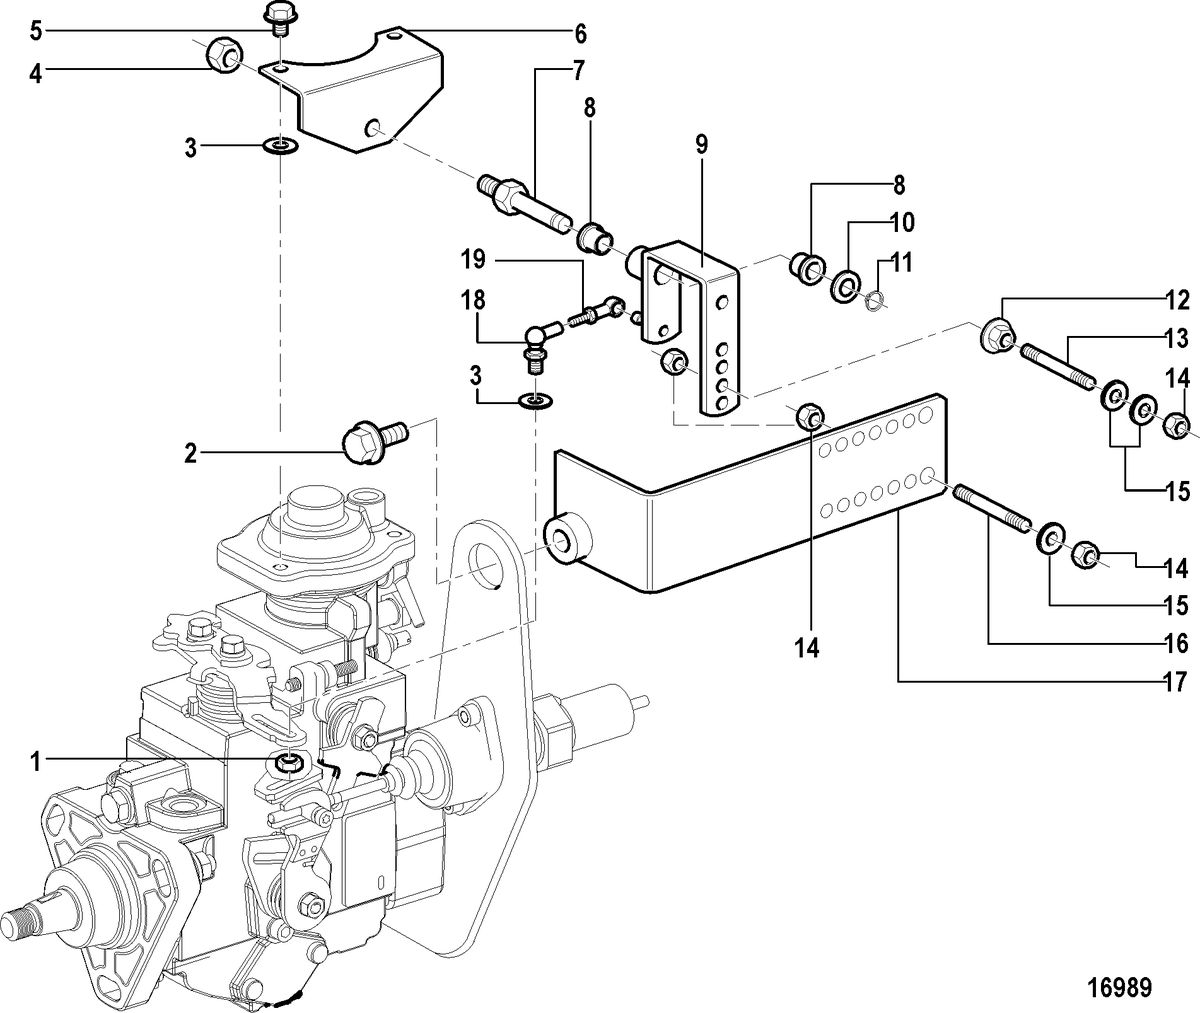 MERCRUISER CUMMINS/MERCRUISER 4.2 UNIFICATION Injection Pump Mounting(All Mechanical Engines)